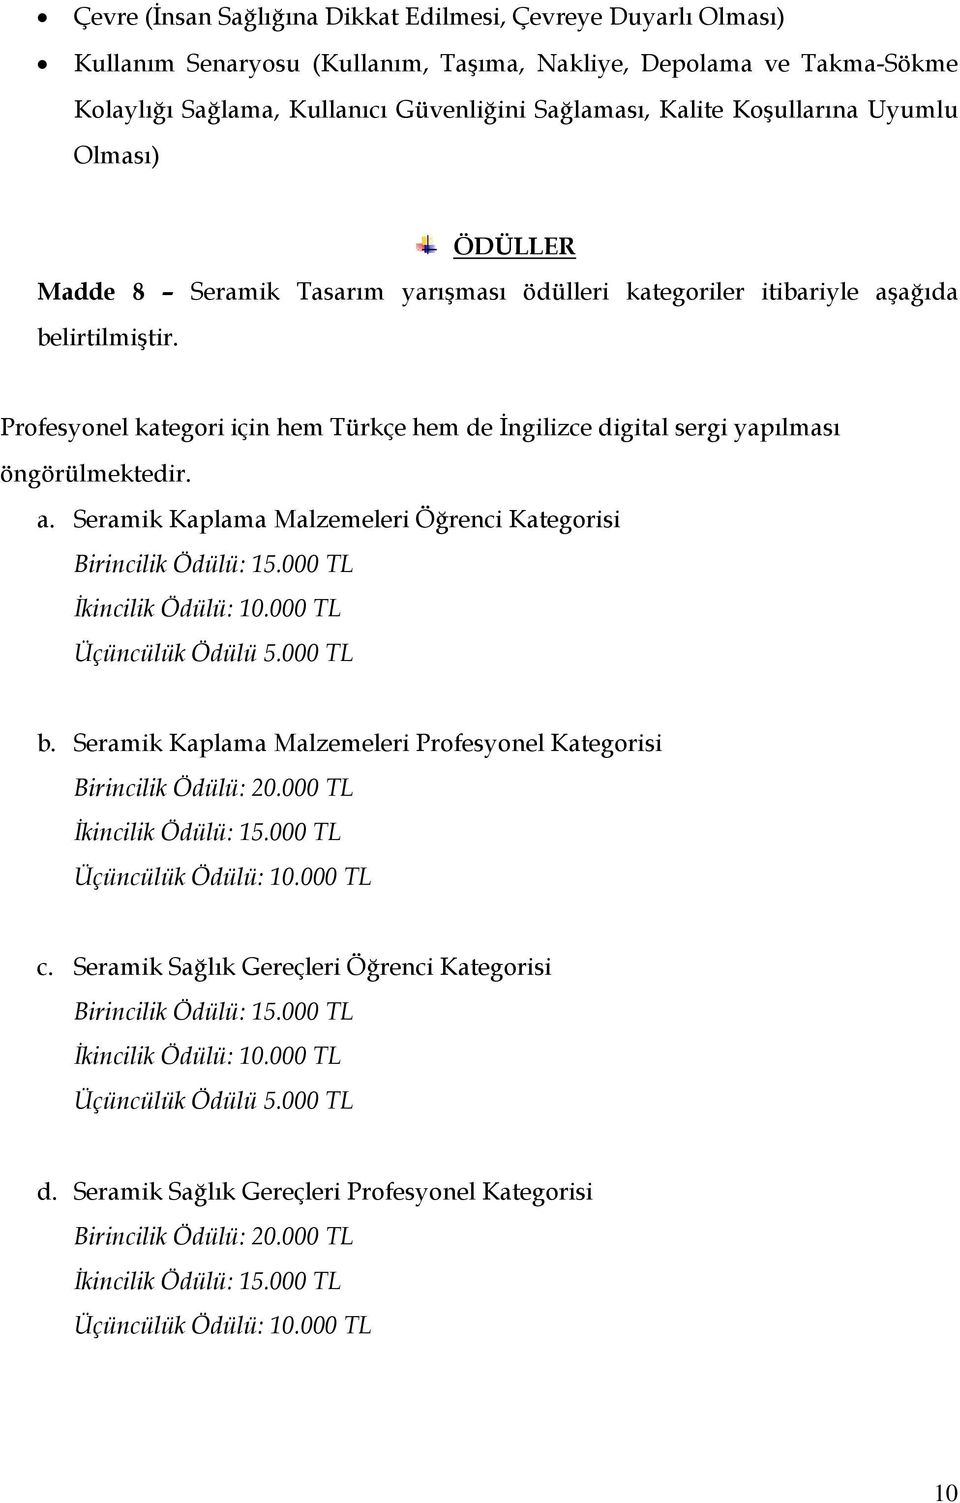 Profesyonel kategori için hem Türkçe hem de İngilizce digital sergi yapılması öngörülmektedir. a. Seramik Kaplama Malzemeleri Öğrenci Kategorisi Birincilik Ödülü: 15.000 TL İkincilik Ödülü: 10.